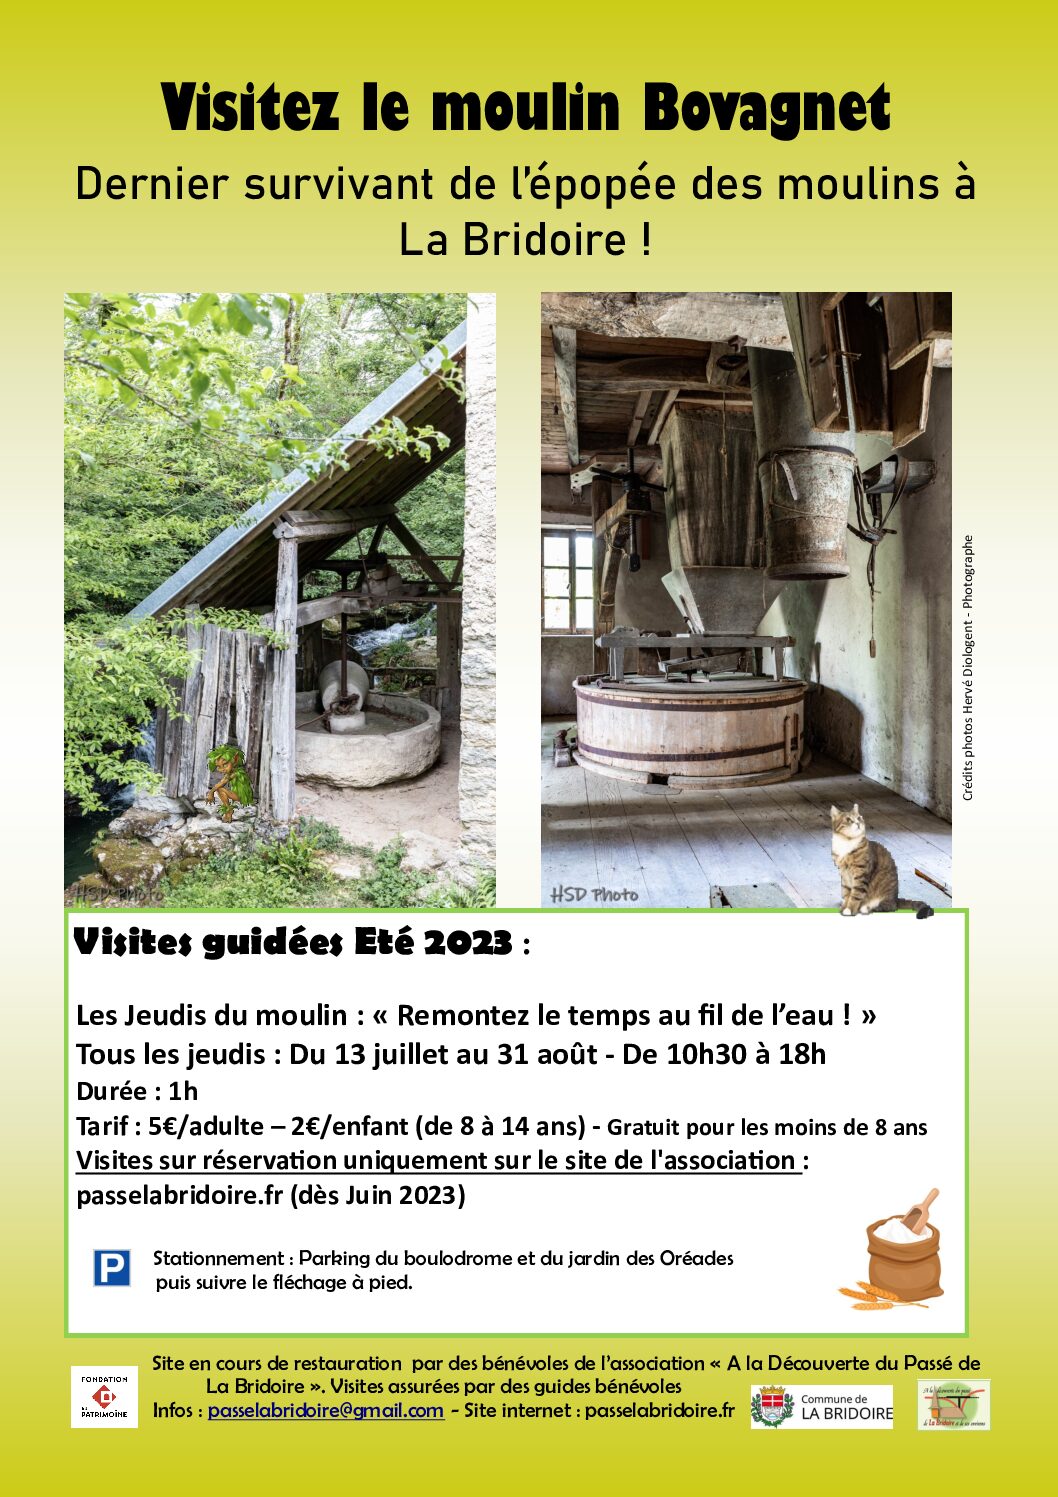 Nouveauté Eté 2023 : Le moulin Bovagnet ouvre ses portes aux visiteurs tous les jeudis de l’été : du jeudi 13 juillet au Jeudi 31 août